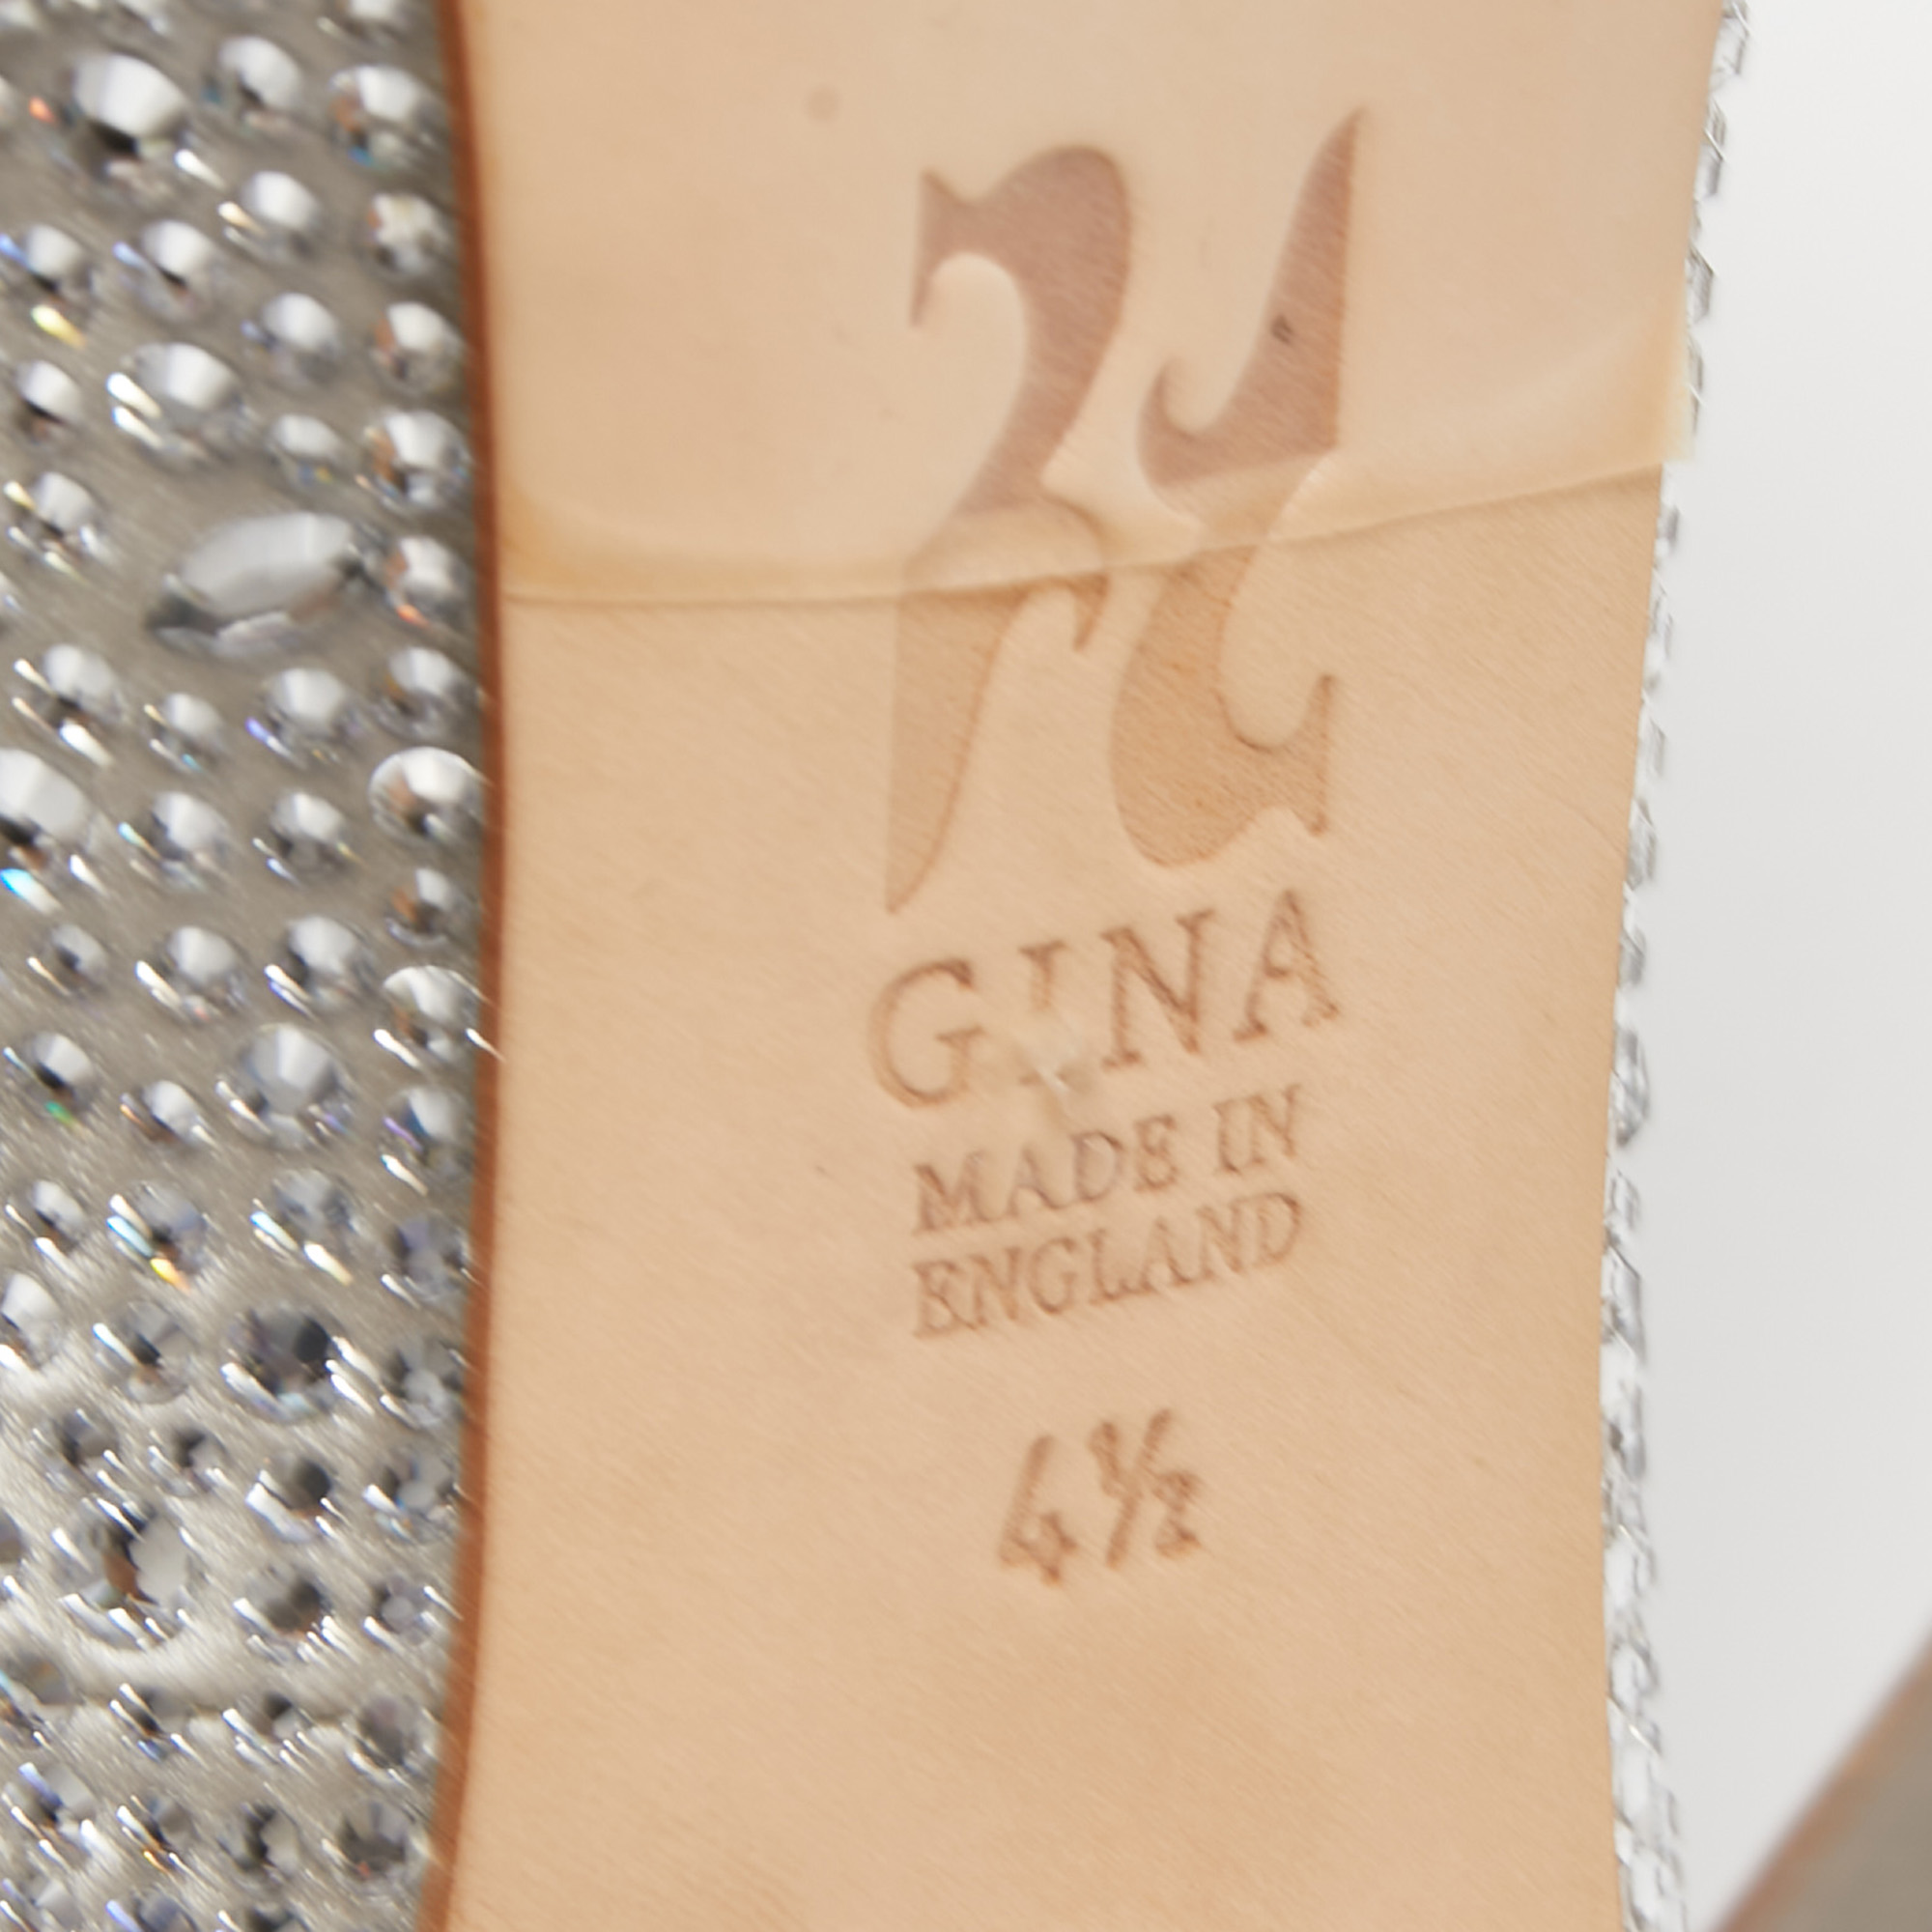 Gina Silver Satin Crystal Embellished Peep Toe Platform  Pumps Size 37.5